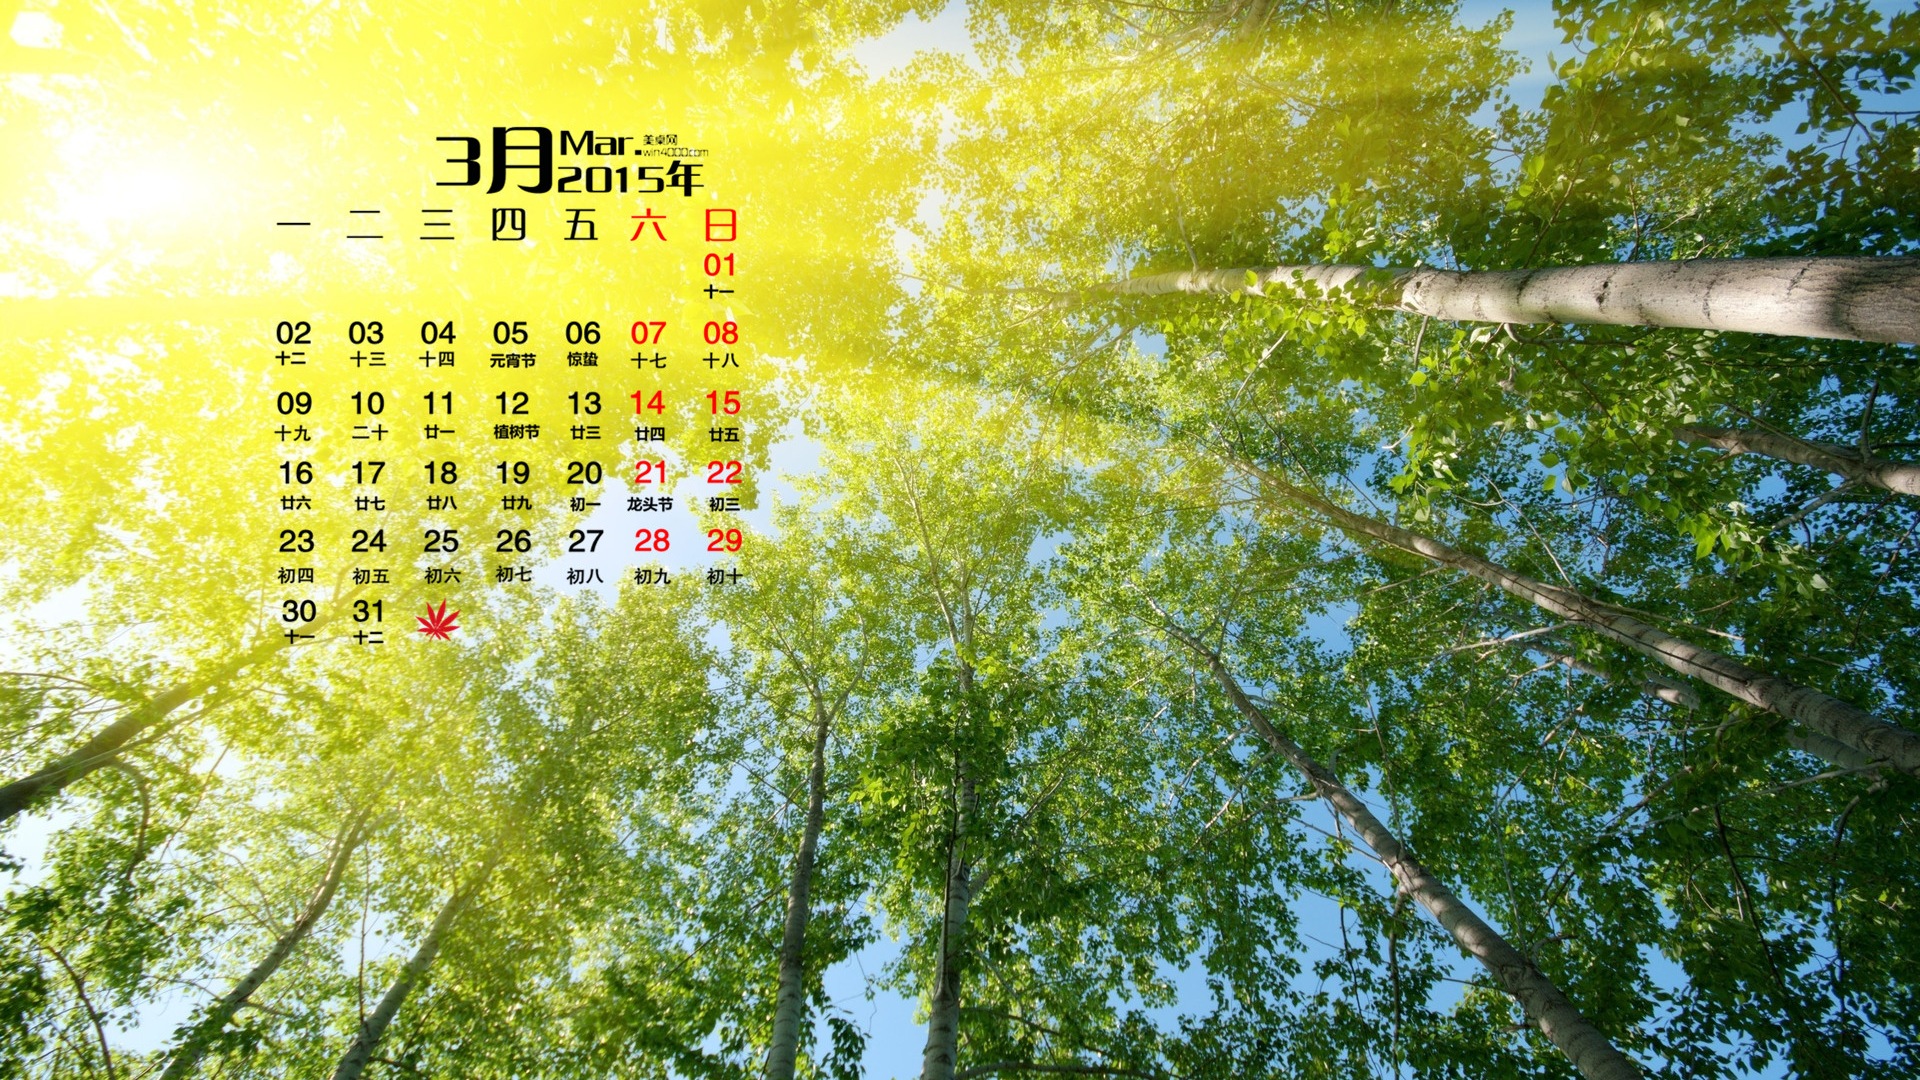 March 2015 Calendar wallpaper (1) #20 - 1920x1080